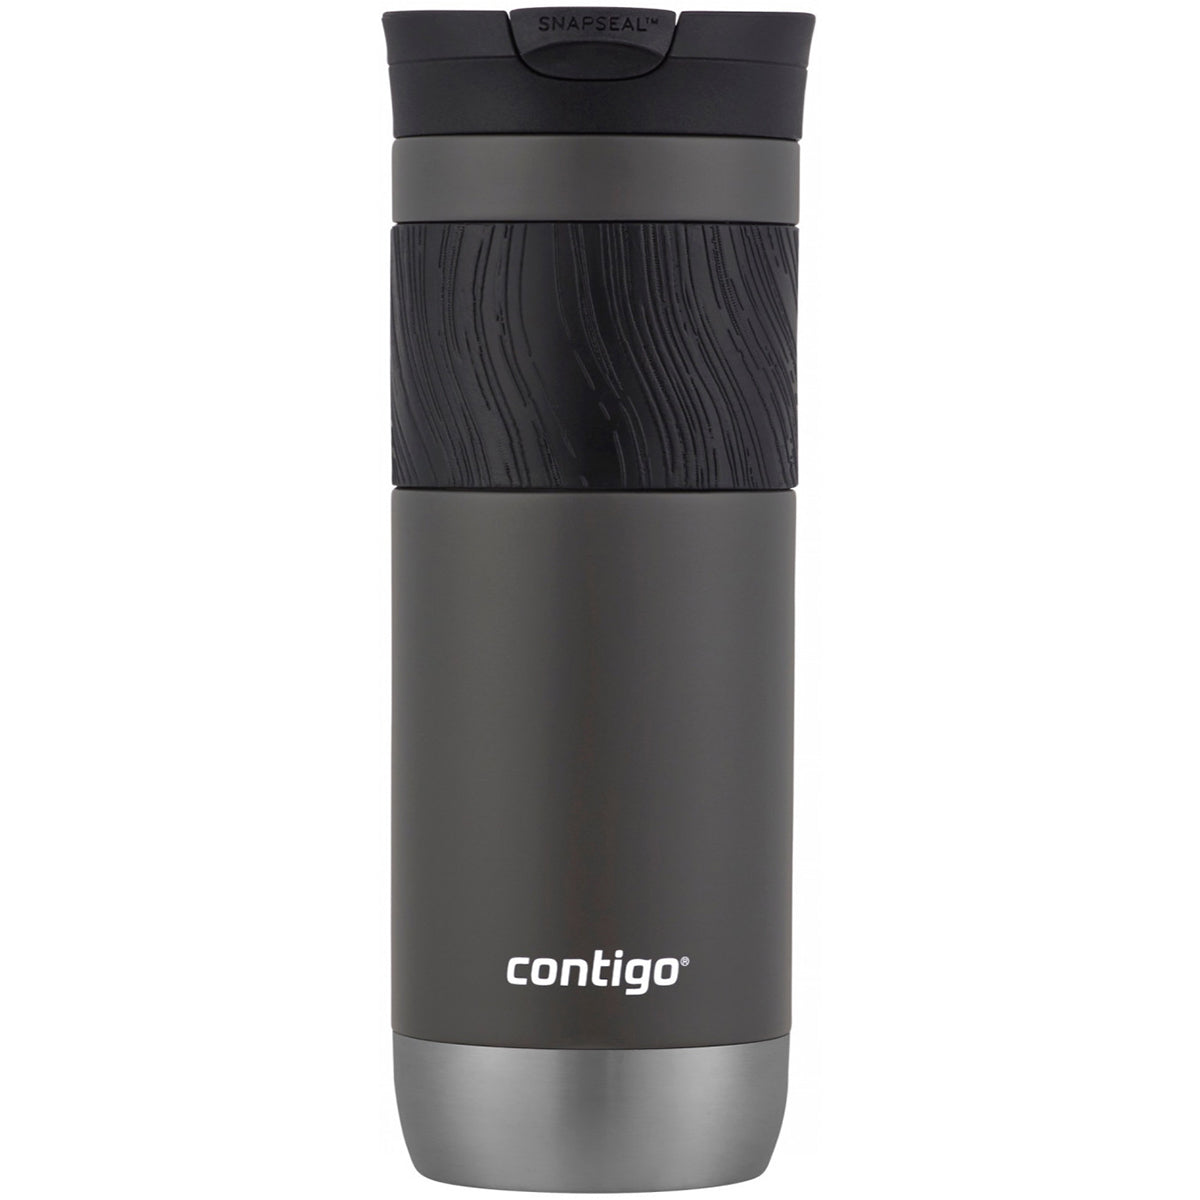 Contigo Byron 2.0 SnapSeal Insulated Stainless Steel Travel Mug Contigo